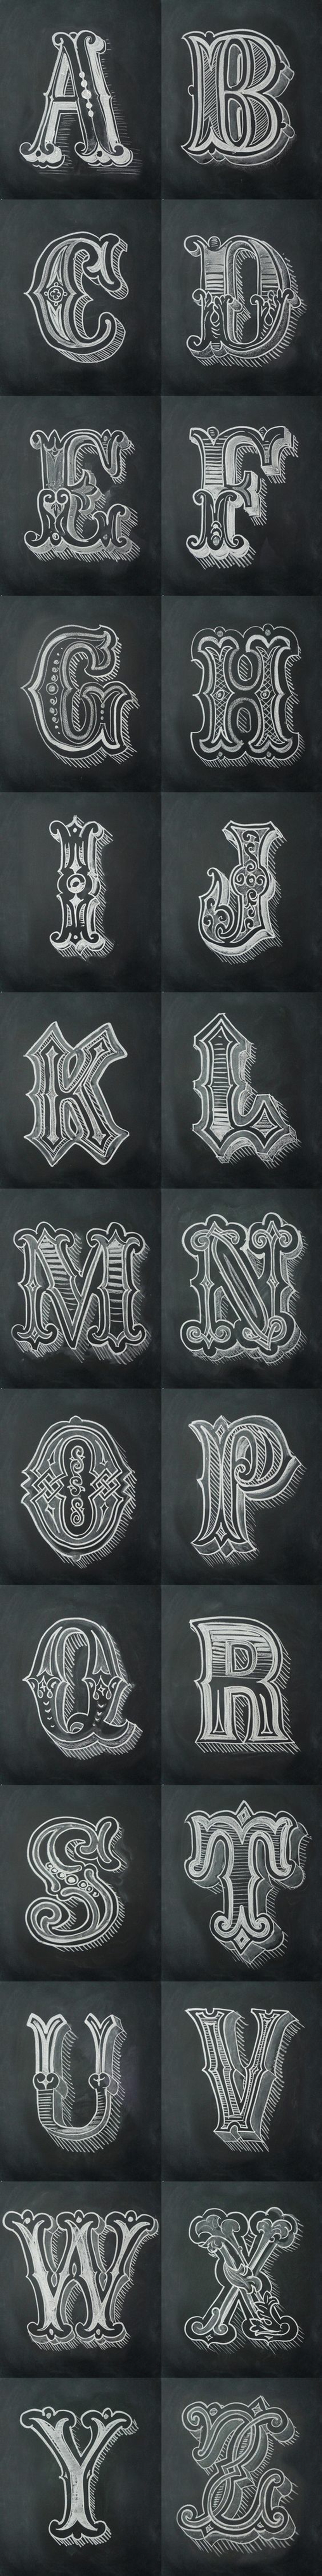 letras para tatuajes, fuente para tatuajes artística, todas las letras del alfabeto, plantilla para tatuaje en blanco y negro 